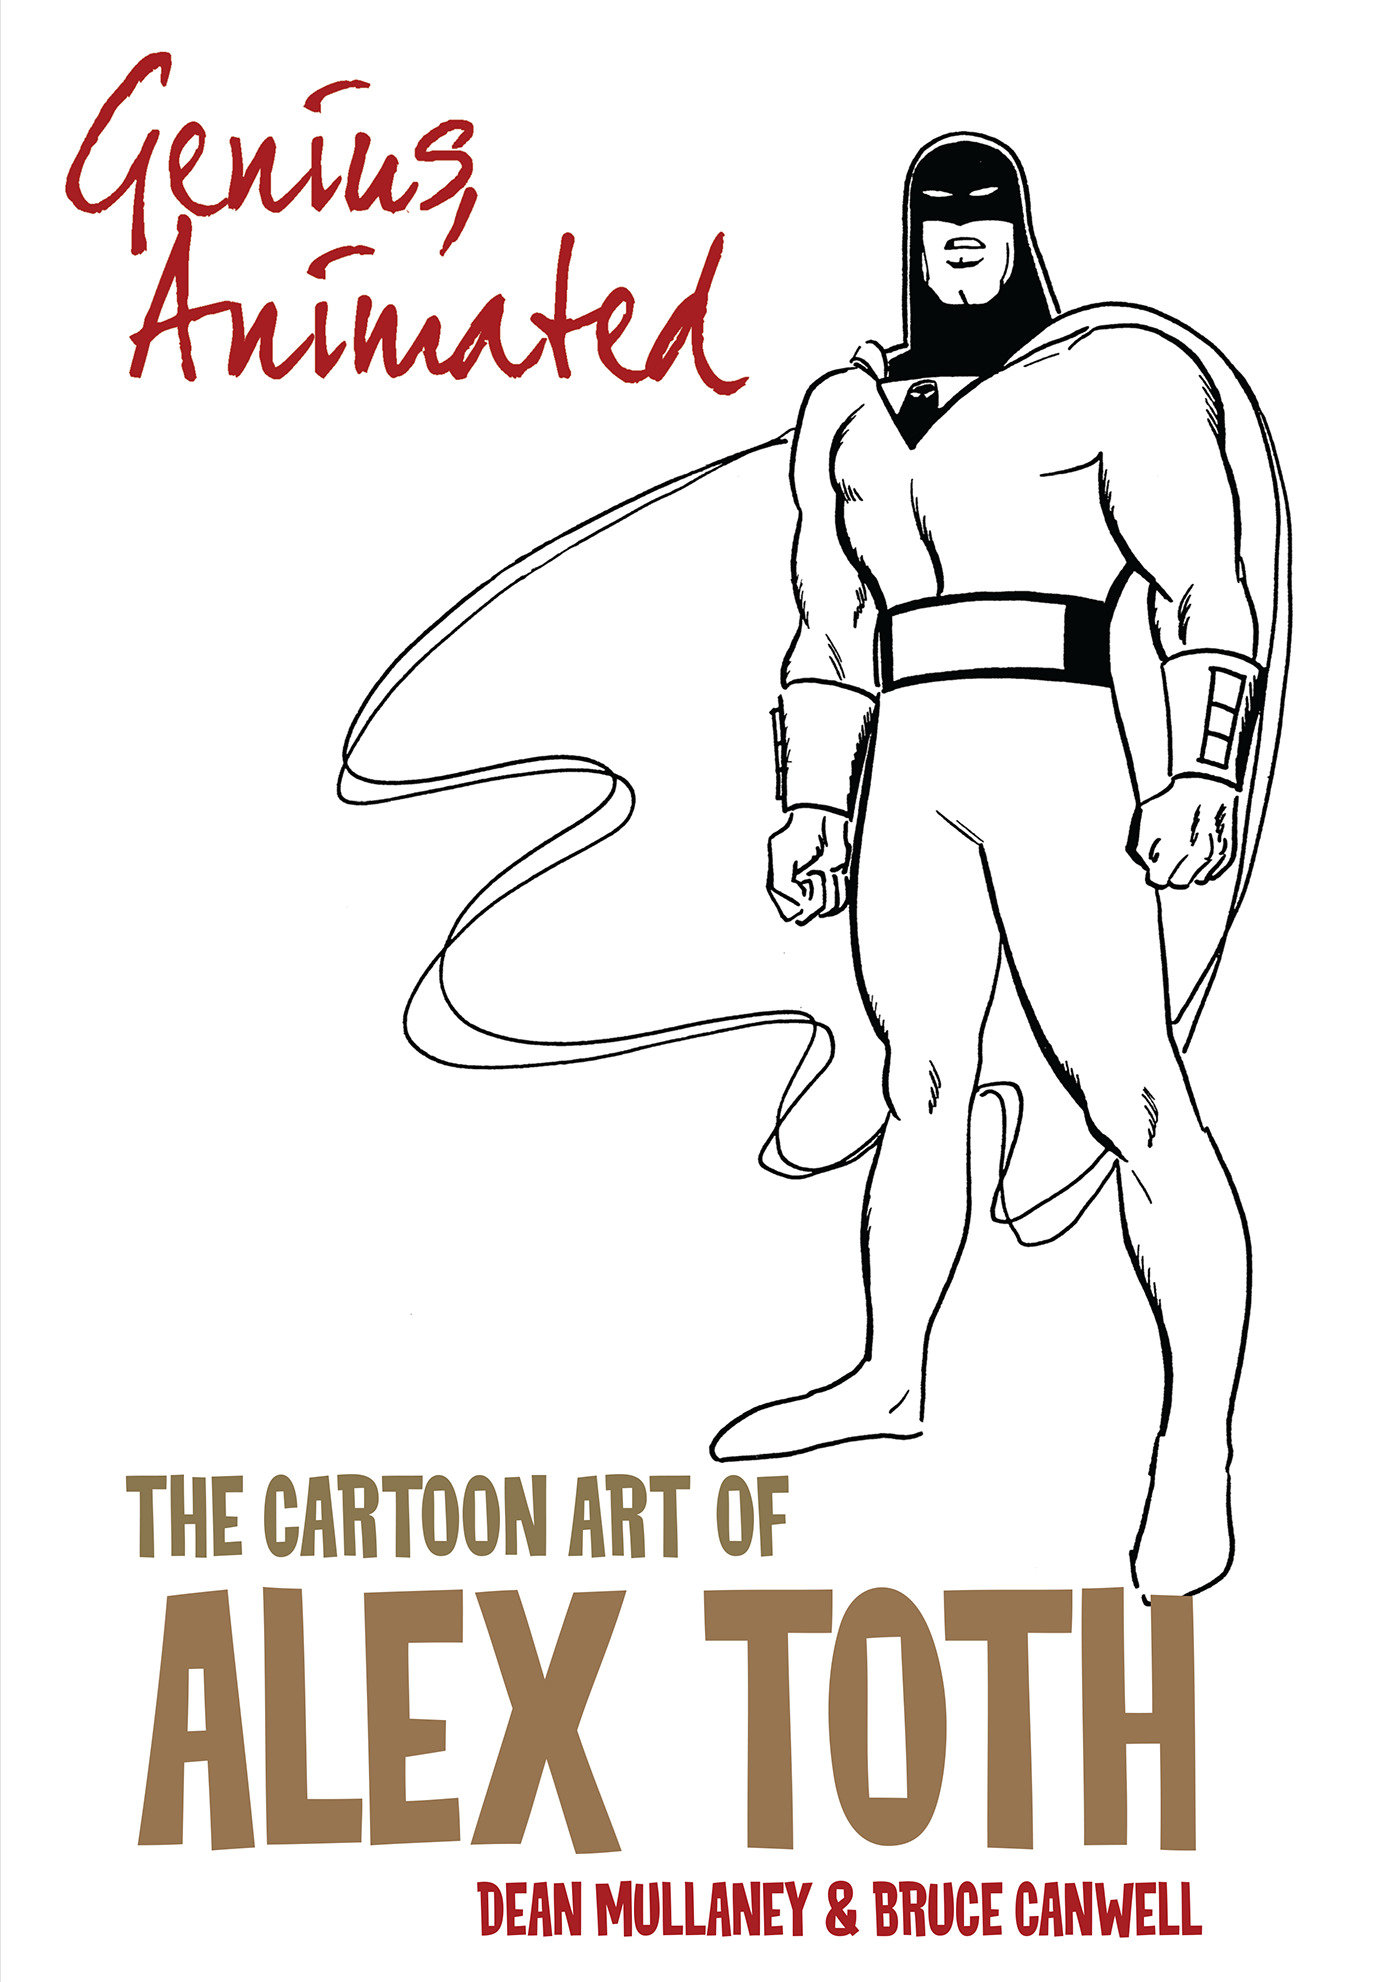 Genius, Animated: The Cartoon Art of Alex Toth Volume 1